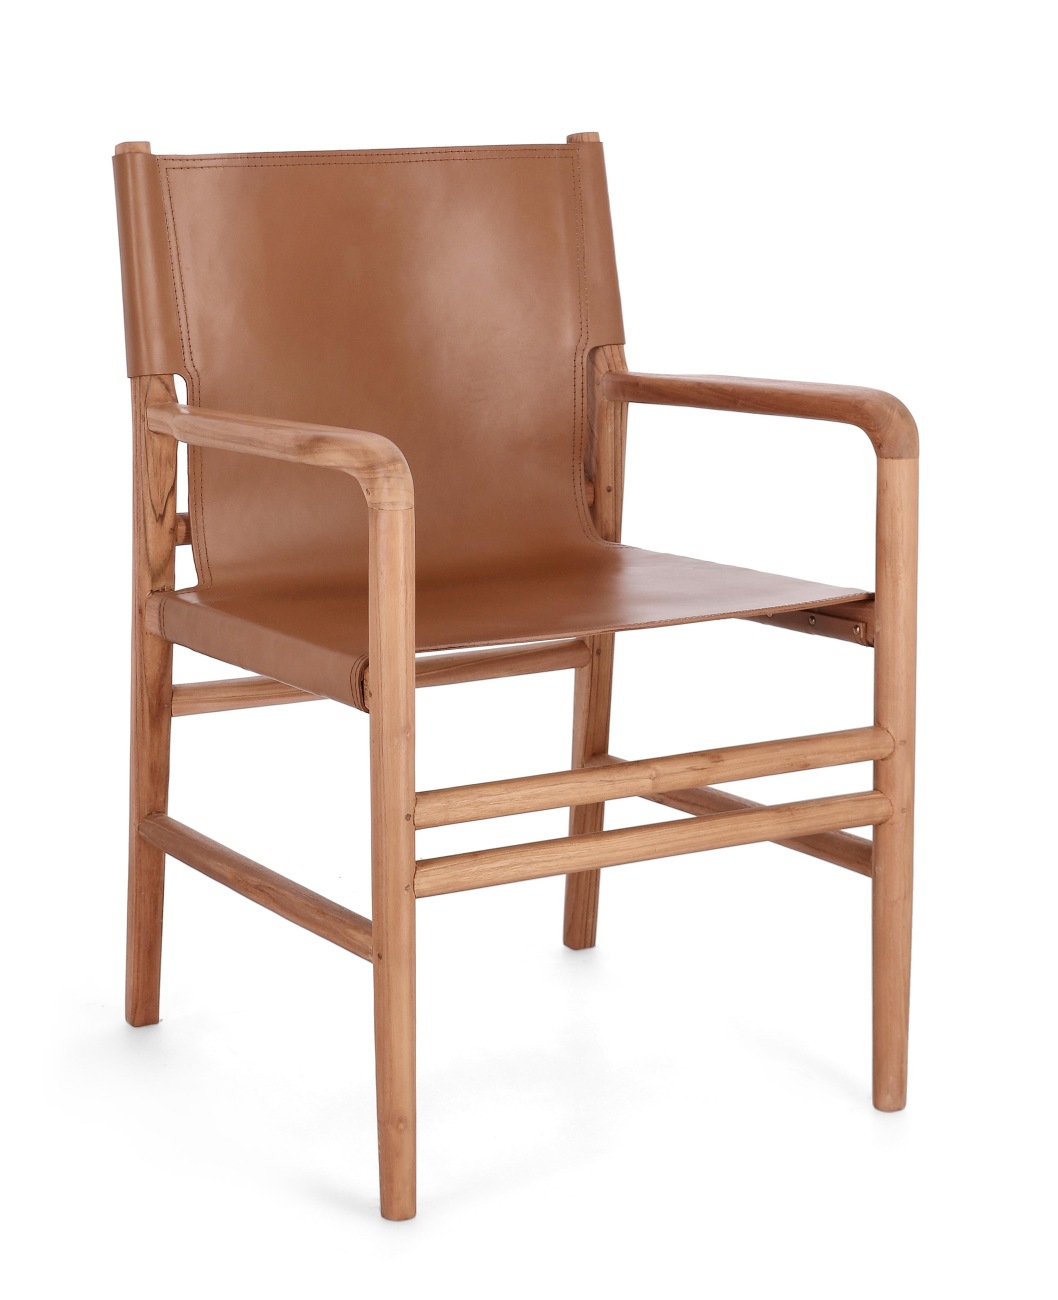 Der Esszimmerstuhl Caroline überzeugt mit seinem modernen Stil. Gefertigt wurde er aus Leder, welches einen Cognac Farbton besitzt. Das Gestell ist aus Teakholz und hat eine natürliche Farbe. Der Stuhl besitzt eine Sitzhöhe von 47 cm.